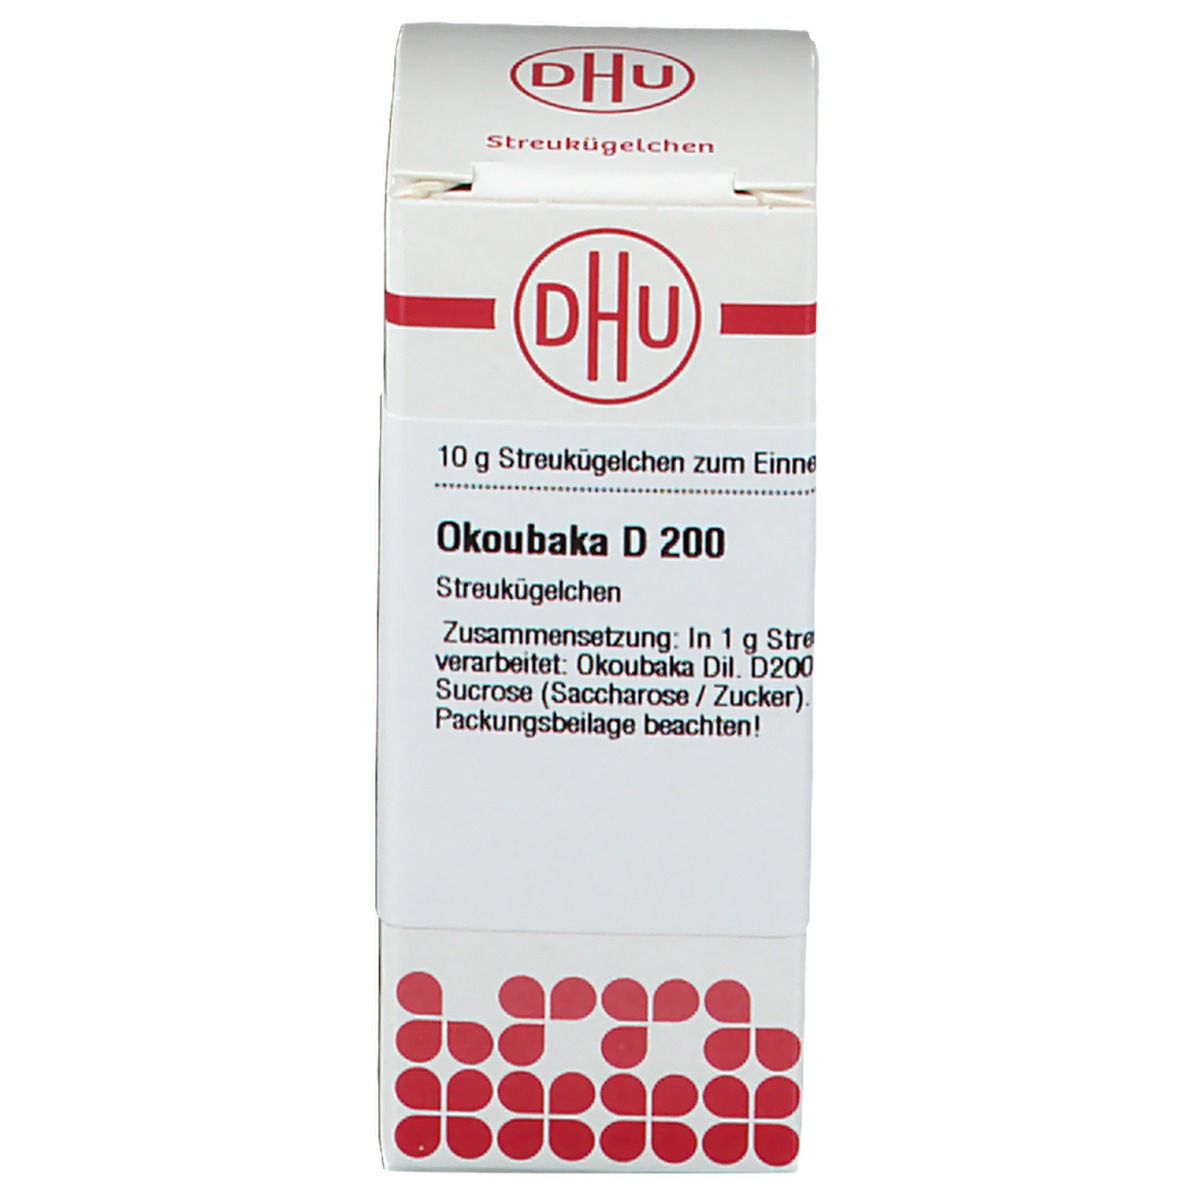 DHU Okoubaka D200